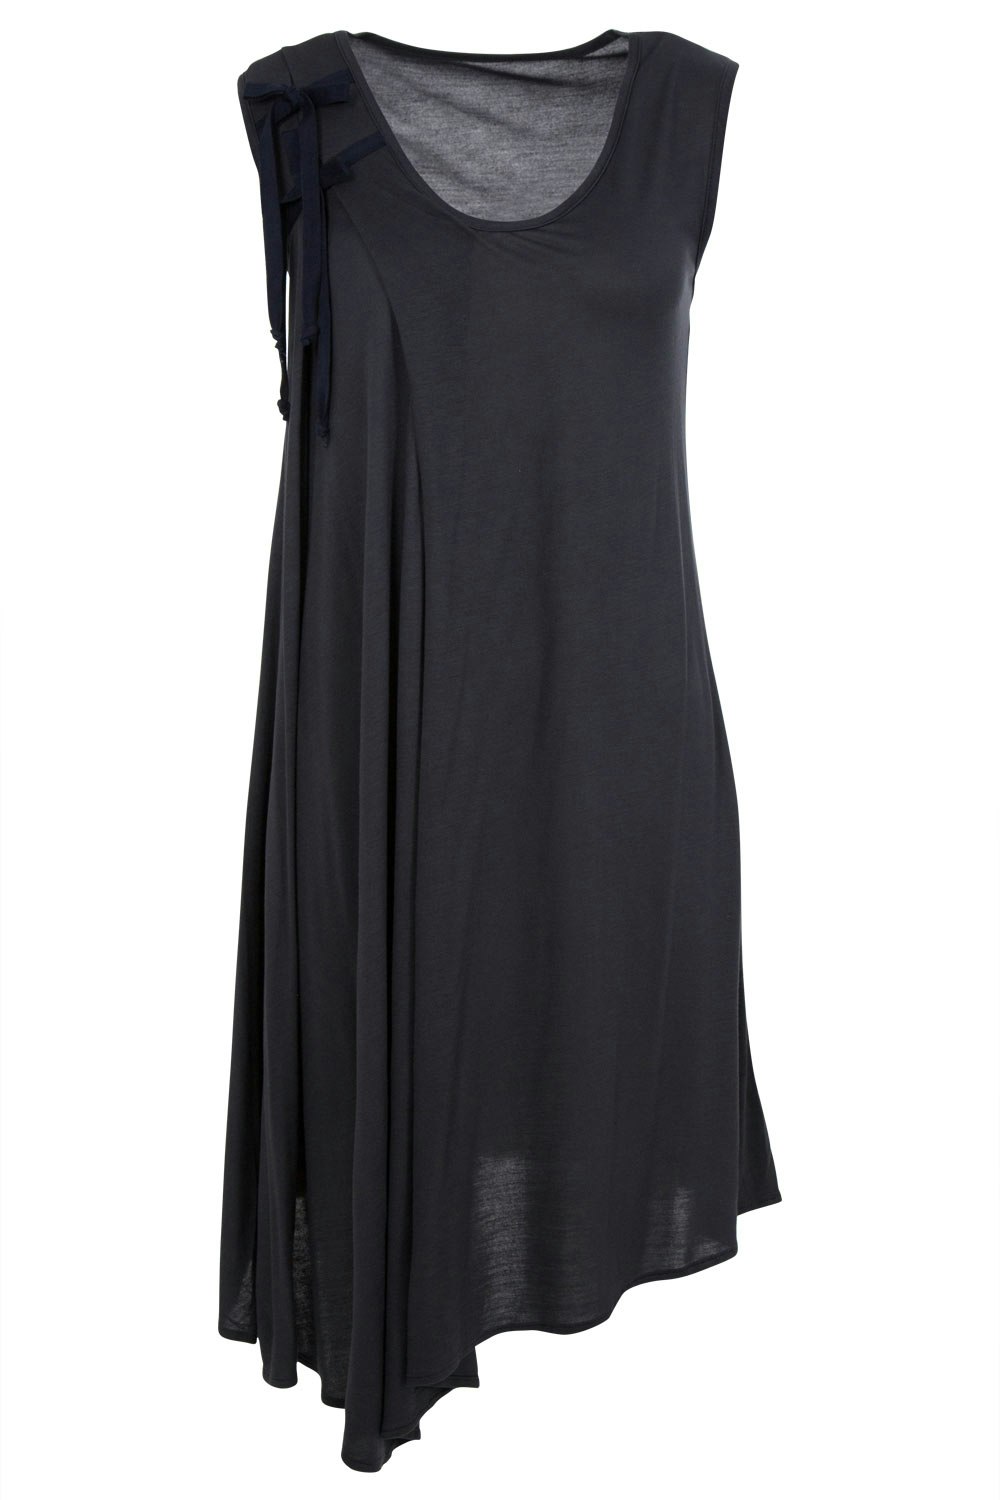 Mesop clothing online Feldspar Dress - Womens Knee Length Dresses - at ...